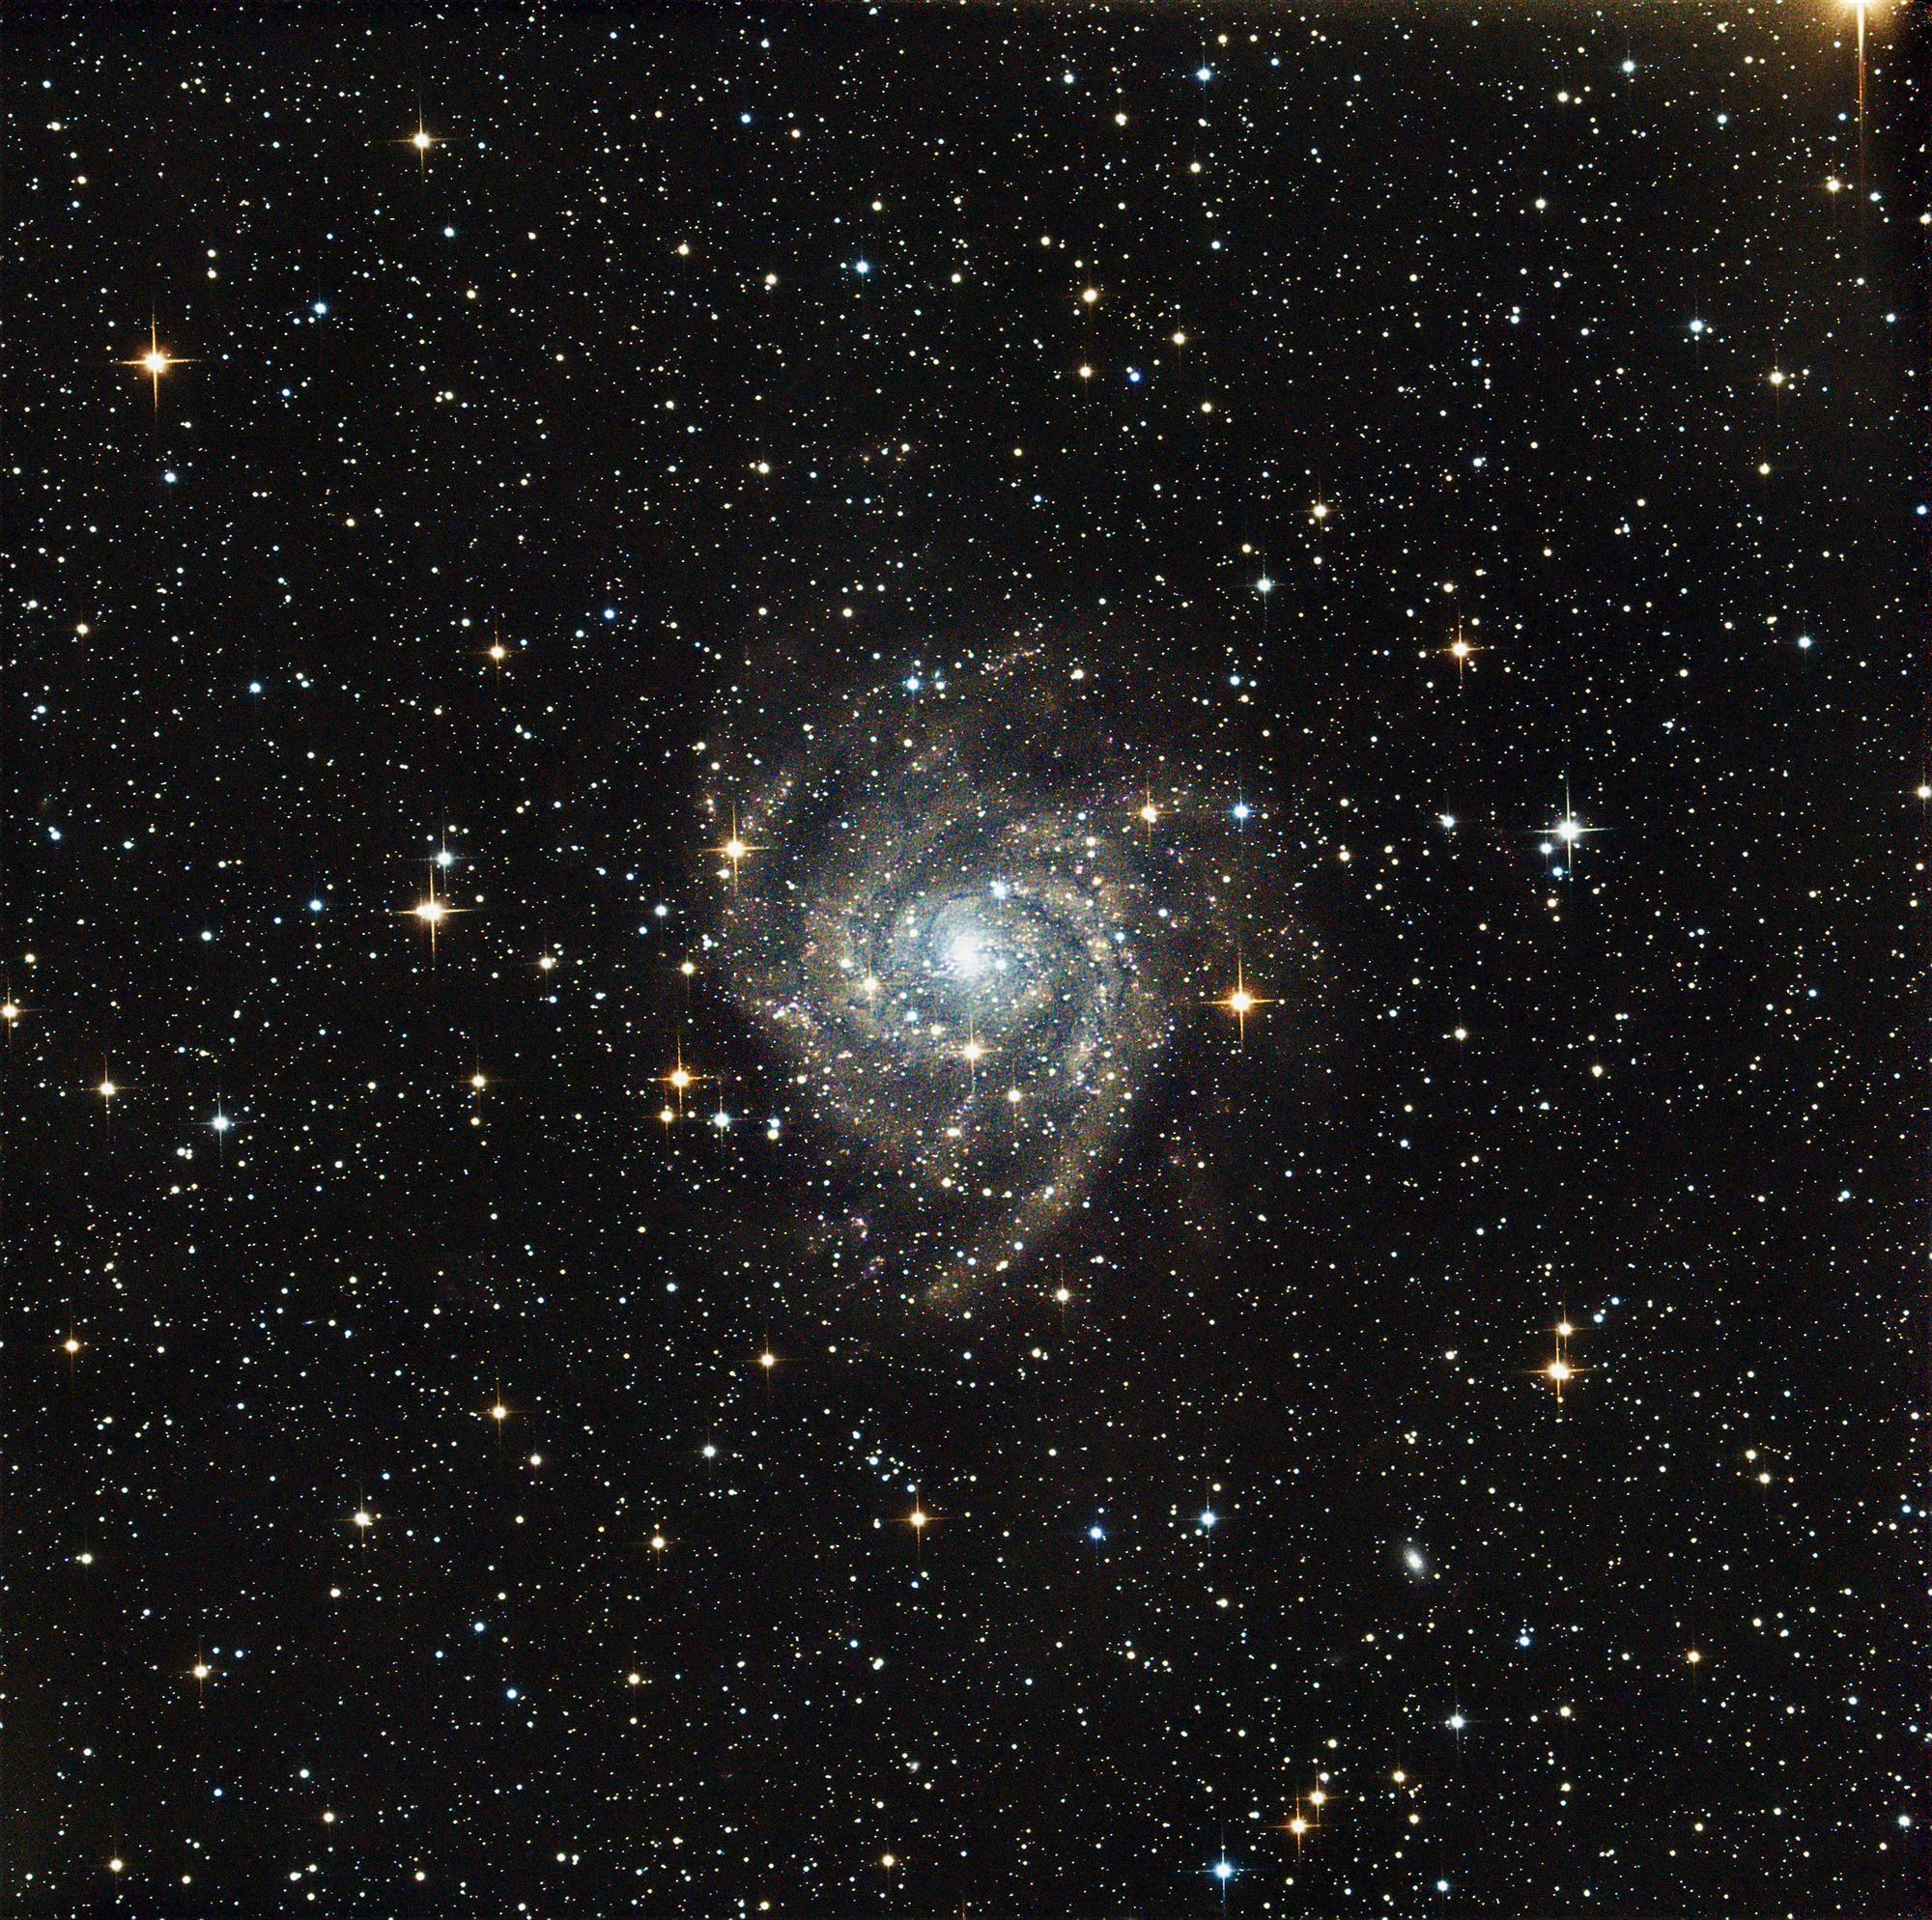 IC 342 La galaxia oculta – Espectro científico